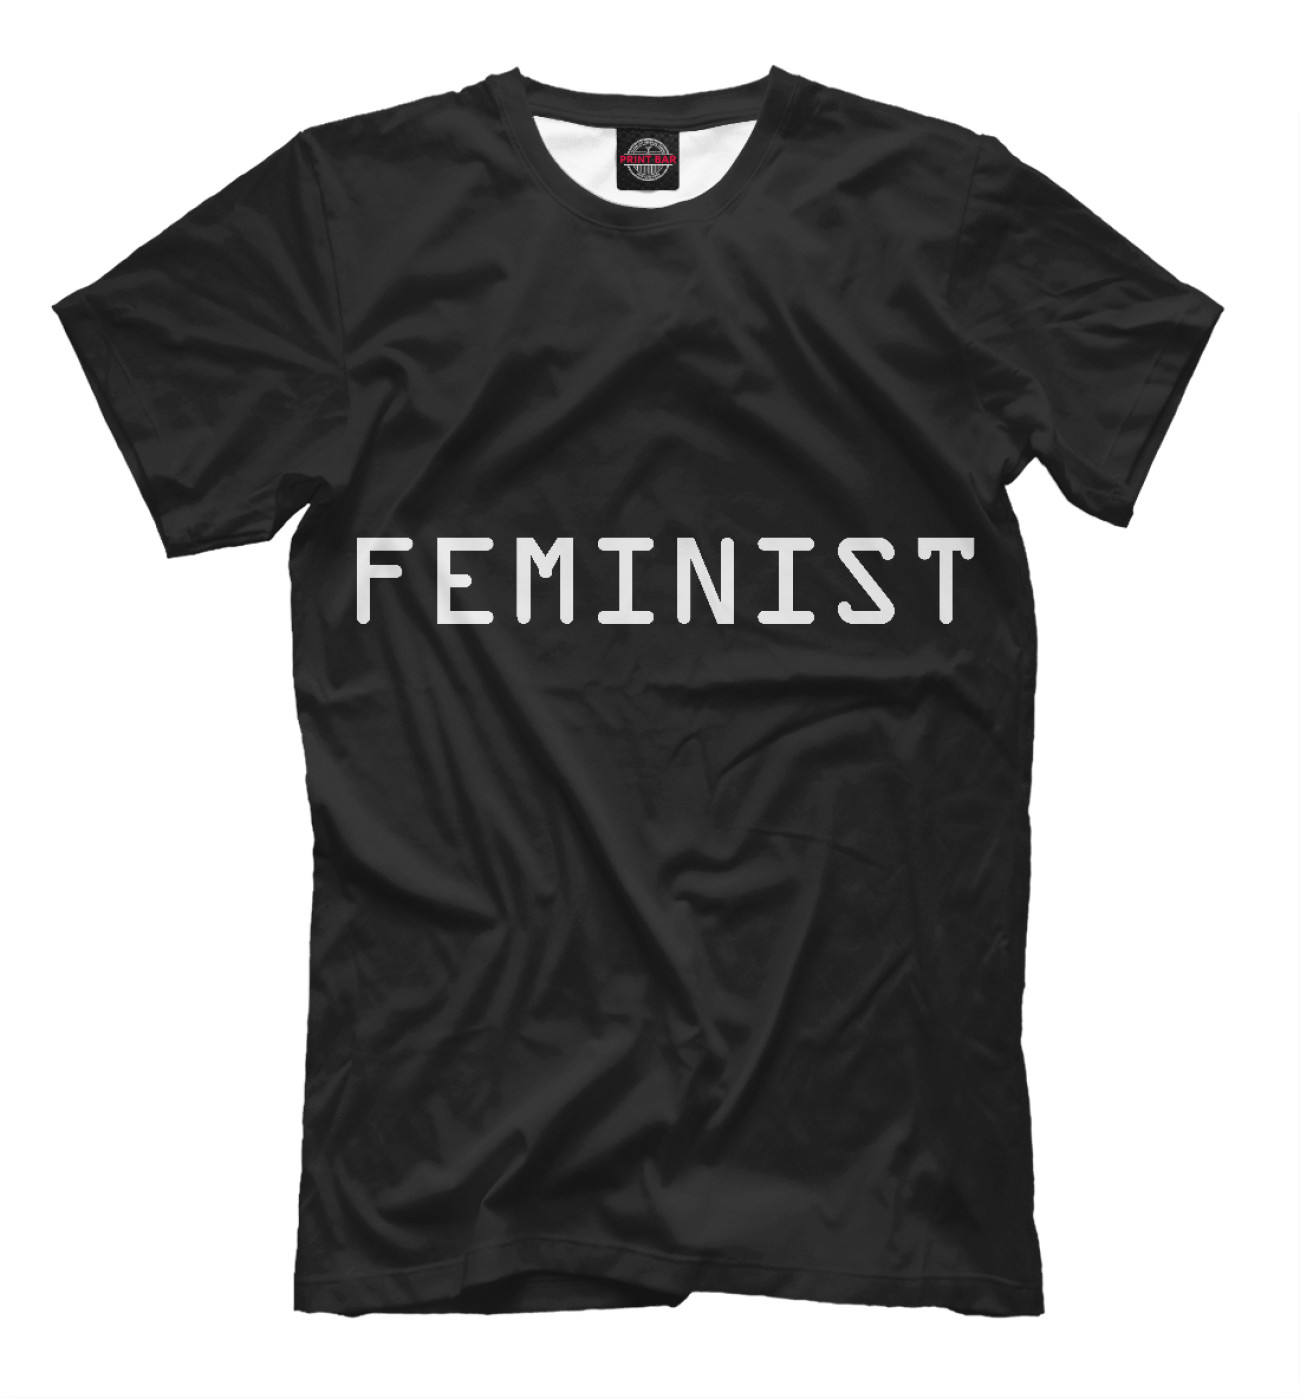 Мужская Футболка Feminist, артикул: FEM-219803-fut-2